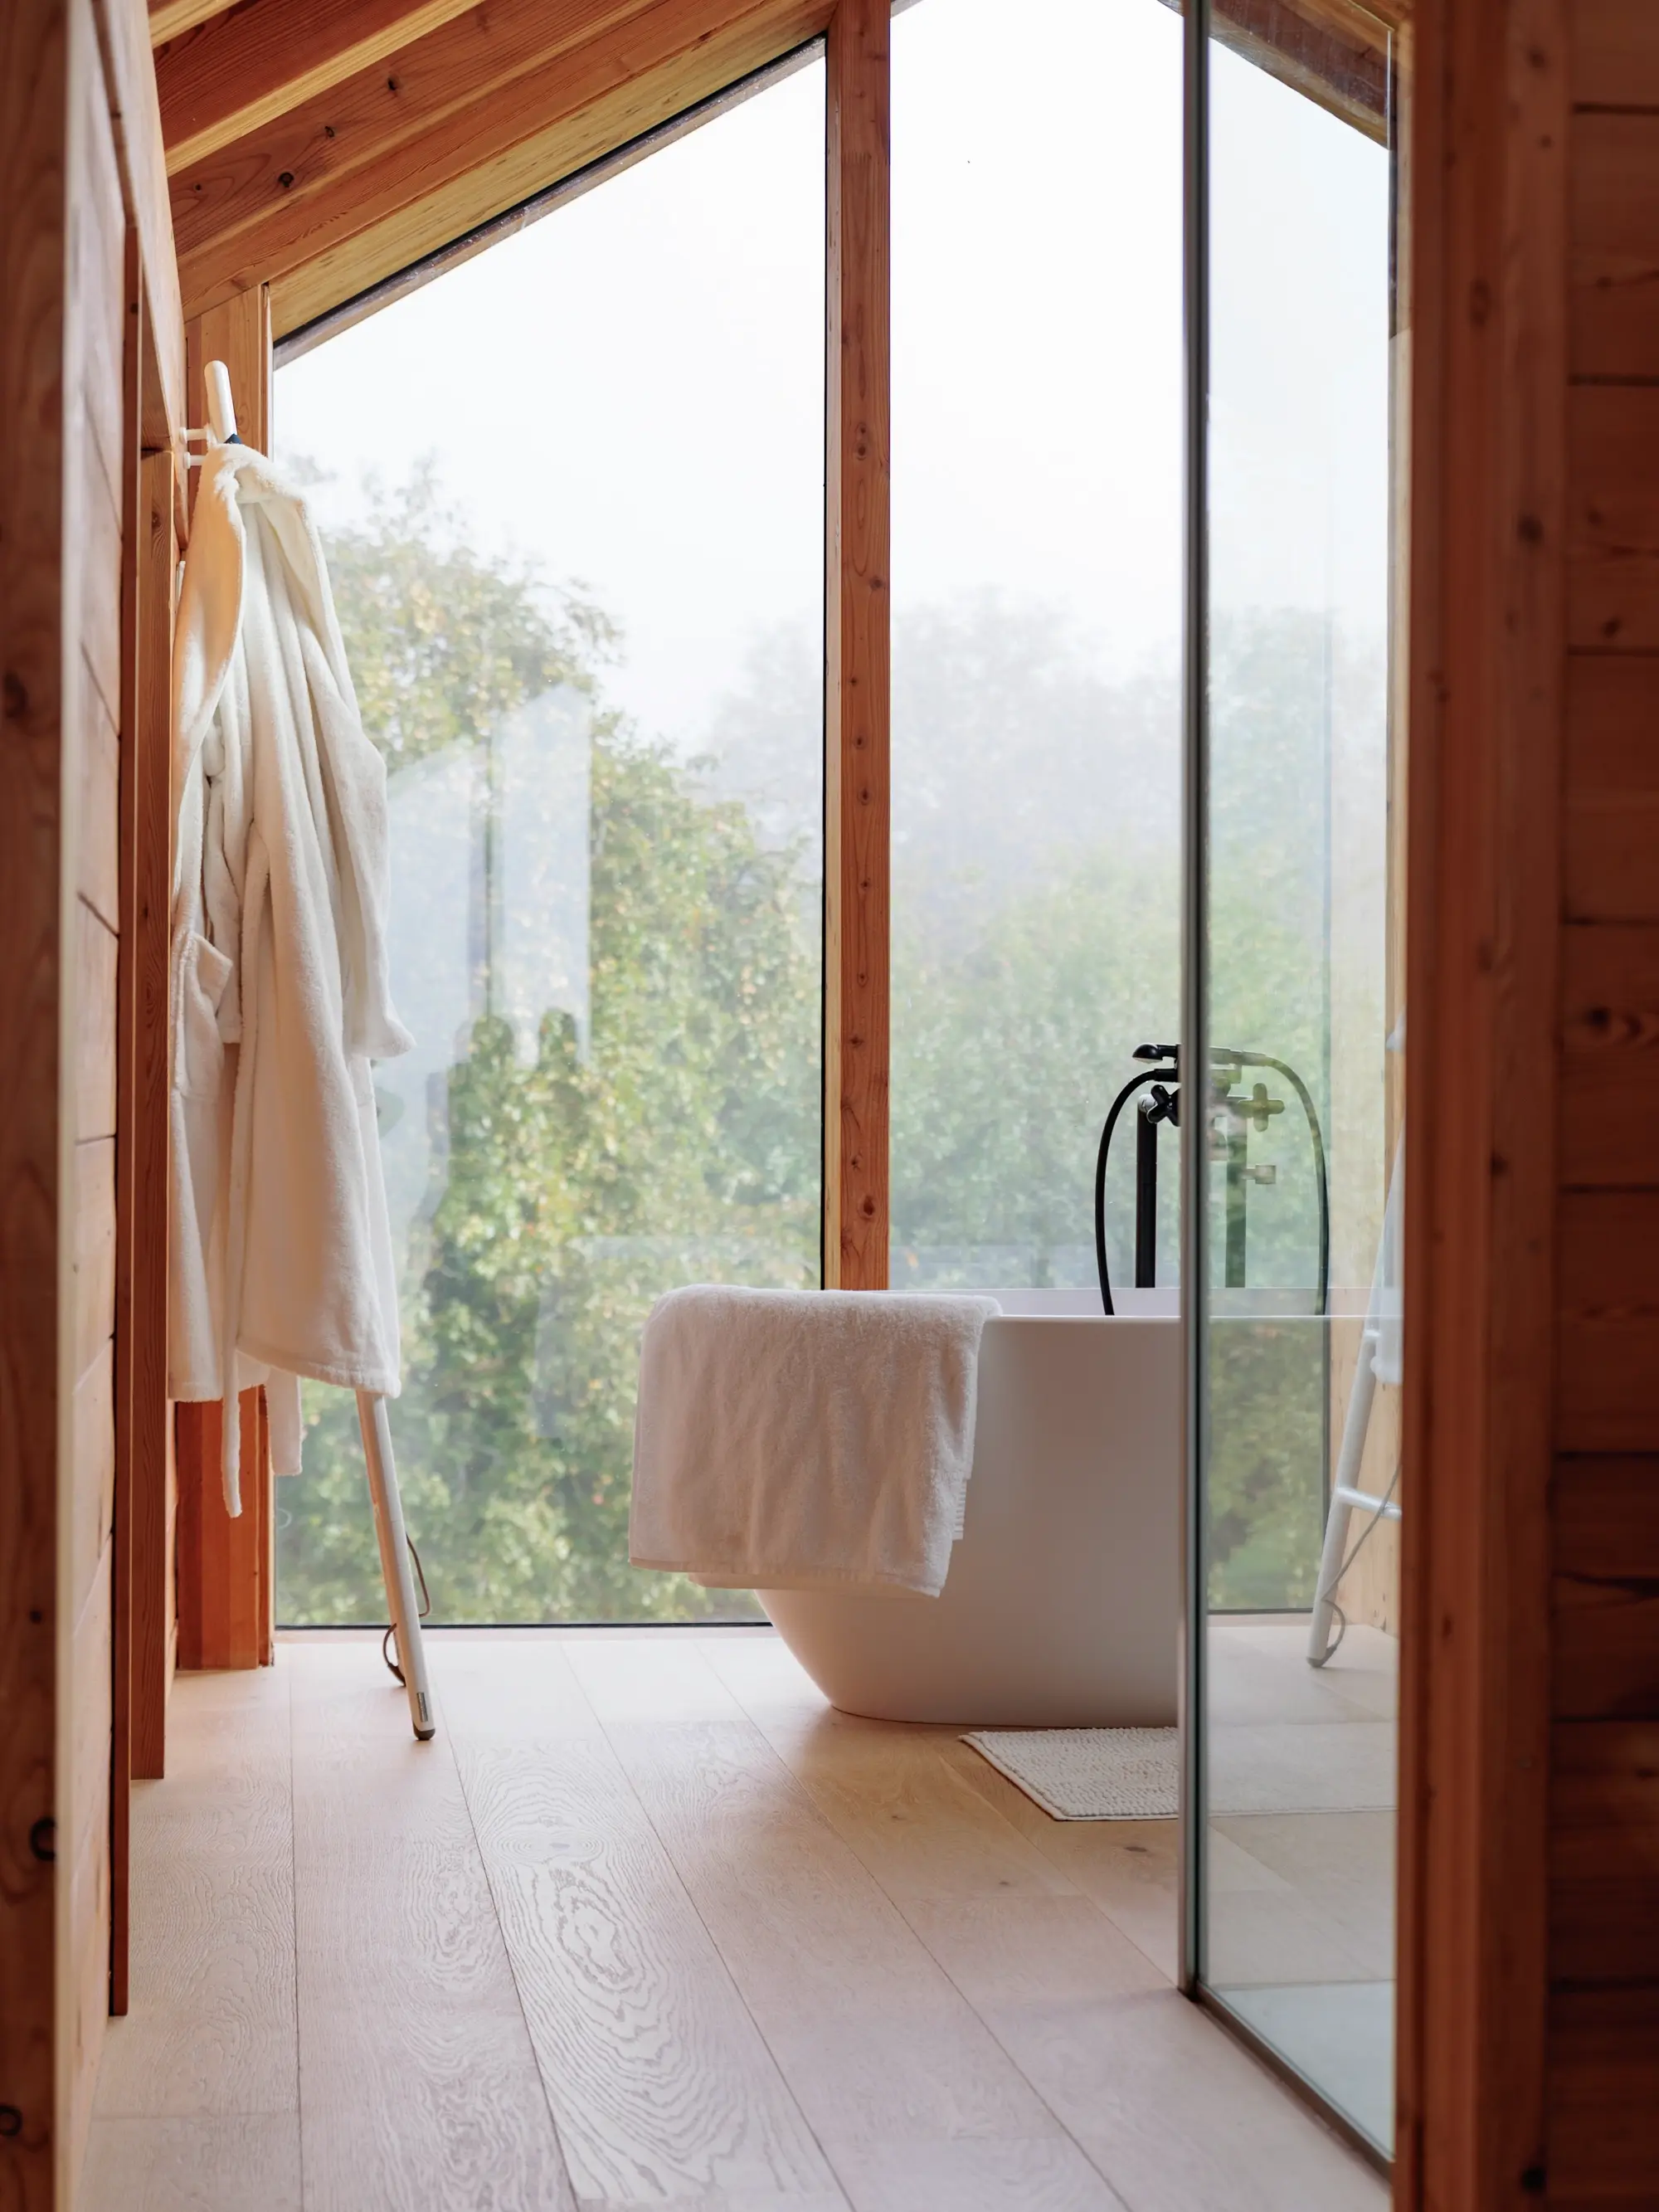 Salle de bain moderne avec baignoire indépendante près de grandes fenêtres donnant sur une forêt.